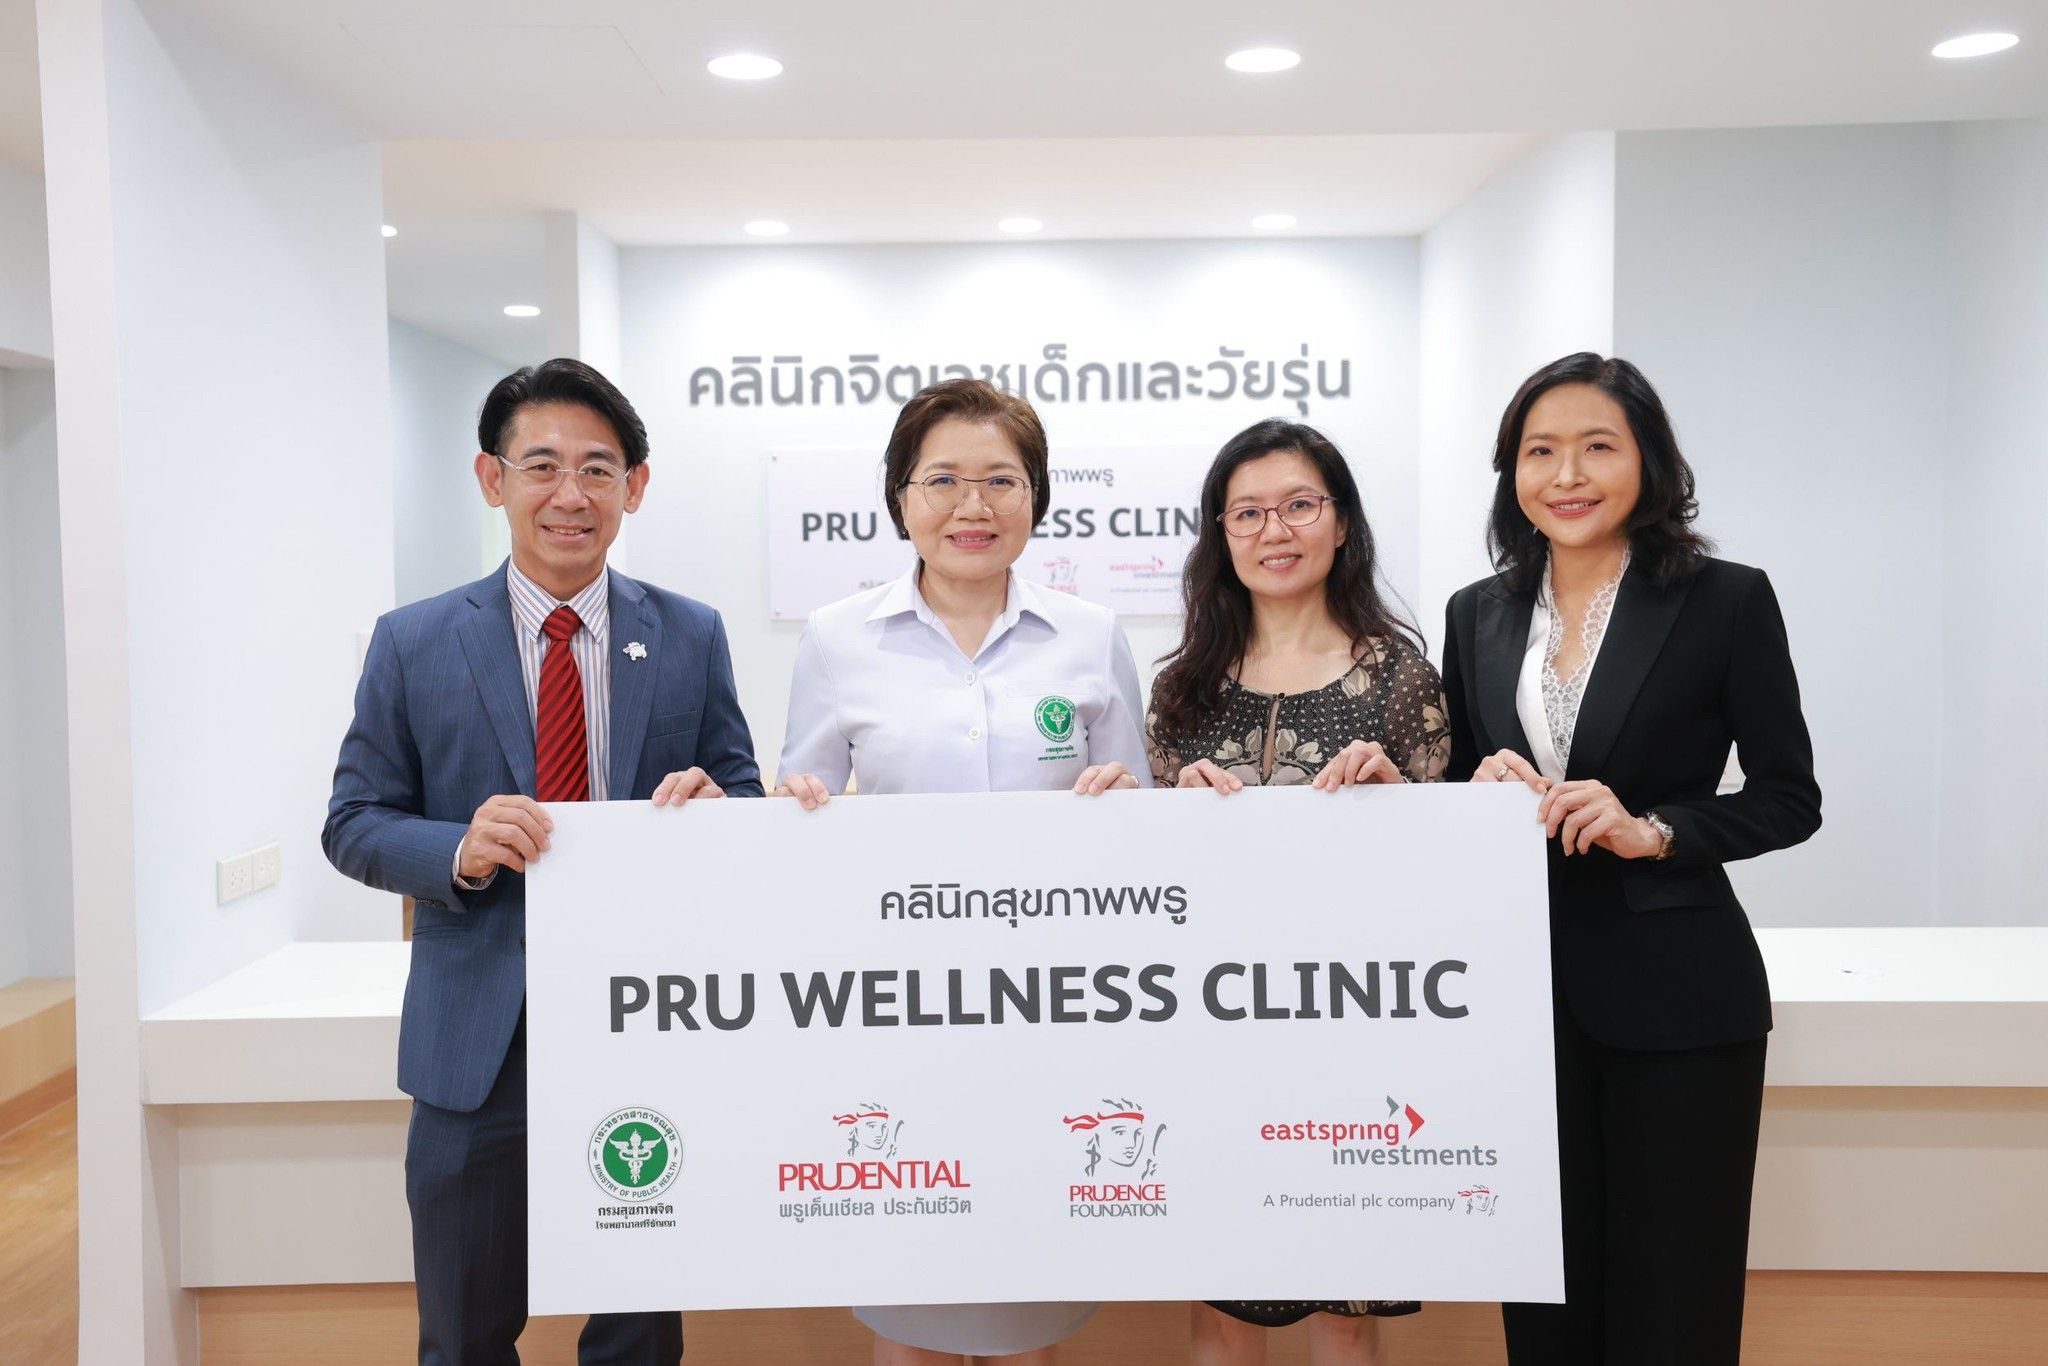 พรูเด็นเชียล ประเทศไทย เดินหน้าดูแลสุขภาพที่ดีของคนไทย ด้วยสุขภาพใจที่แข็งแรงมอบ “PRU Wellness Clinic” ร่วมกับ พรูเด็นซ์ ฟาวน์เดชัน และ อีสท์สปริง (ประเทศไทย)